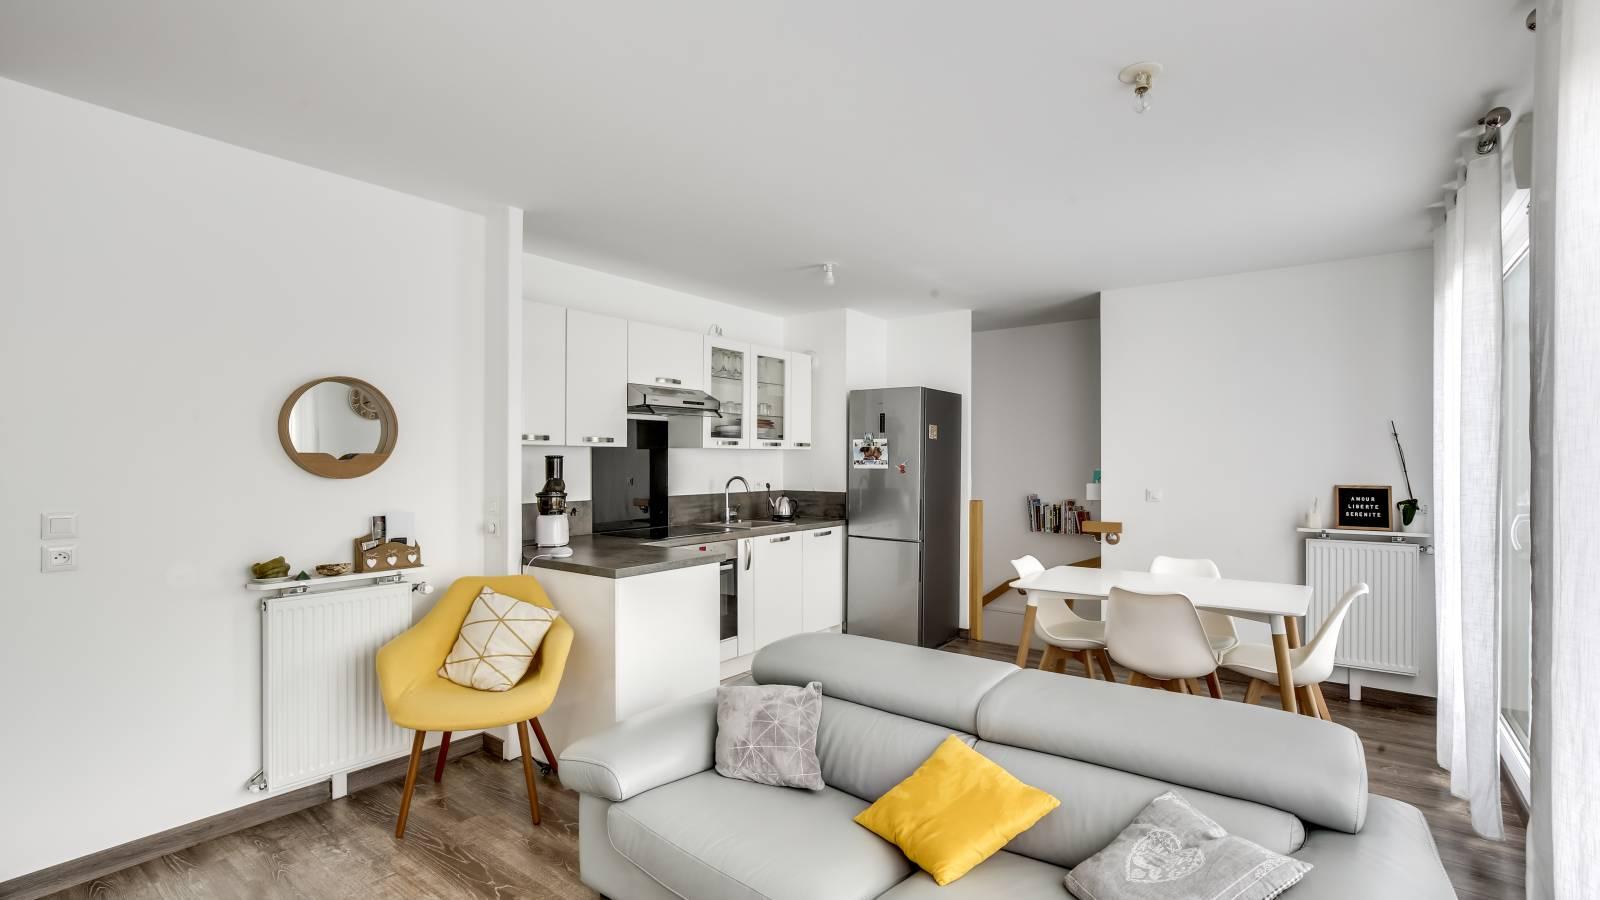 Salón cocina moderno y minimalista, detalles en amarillo